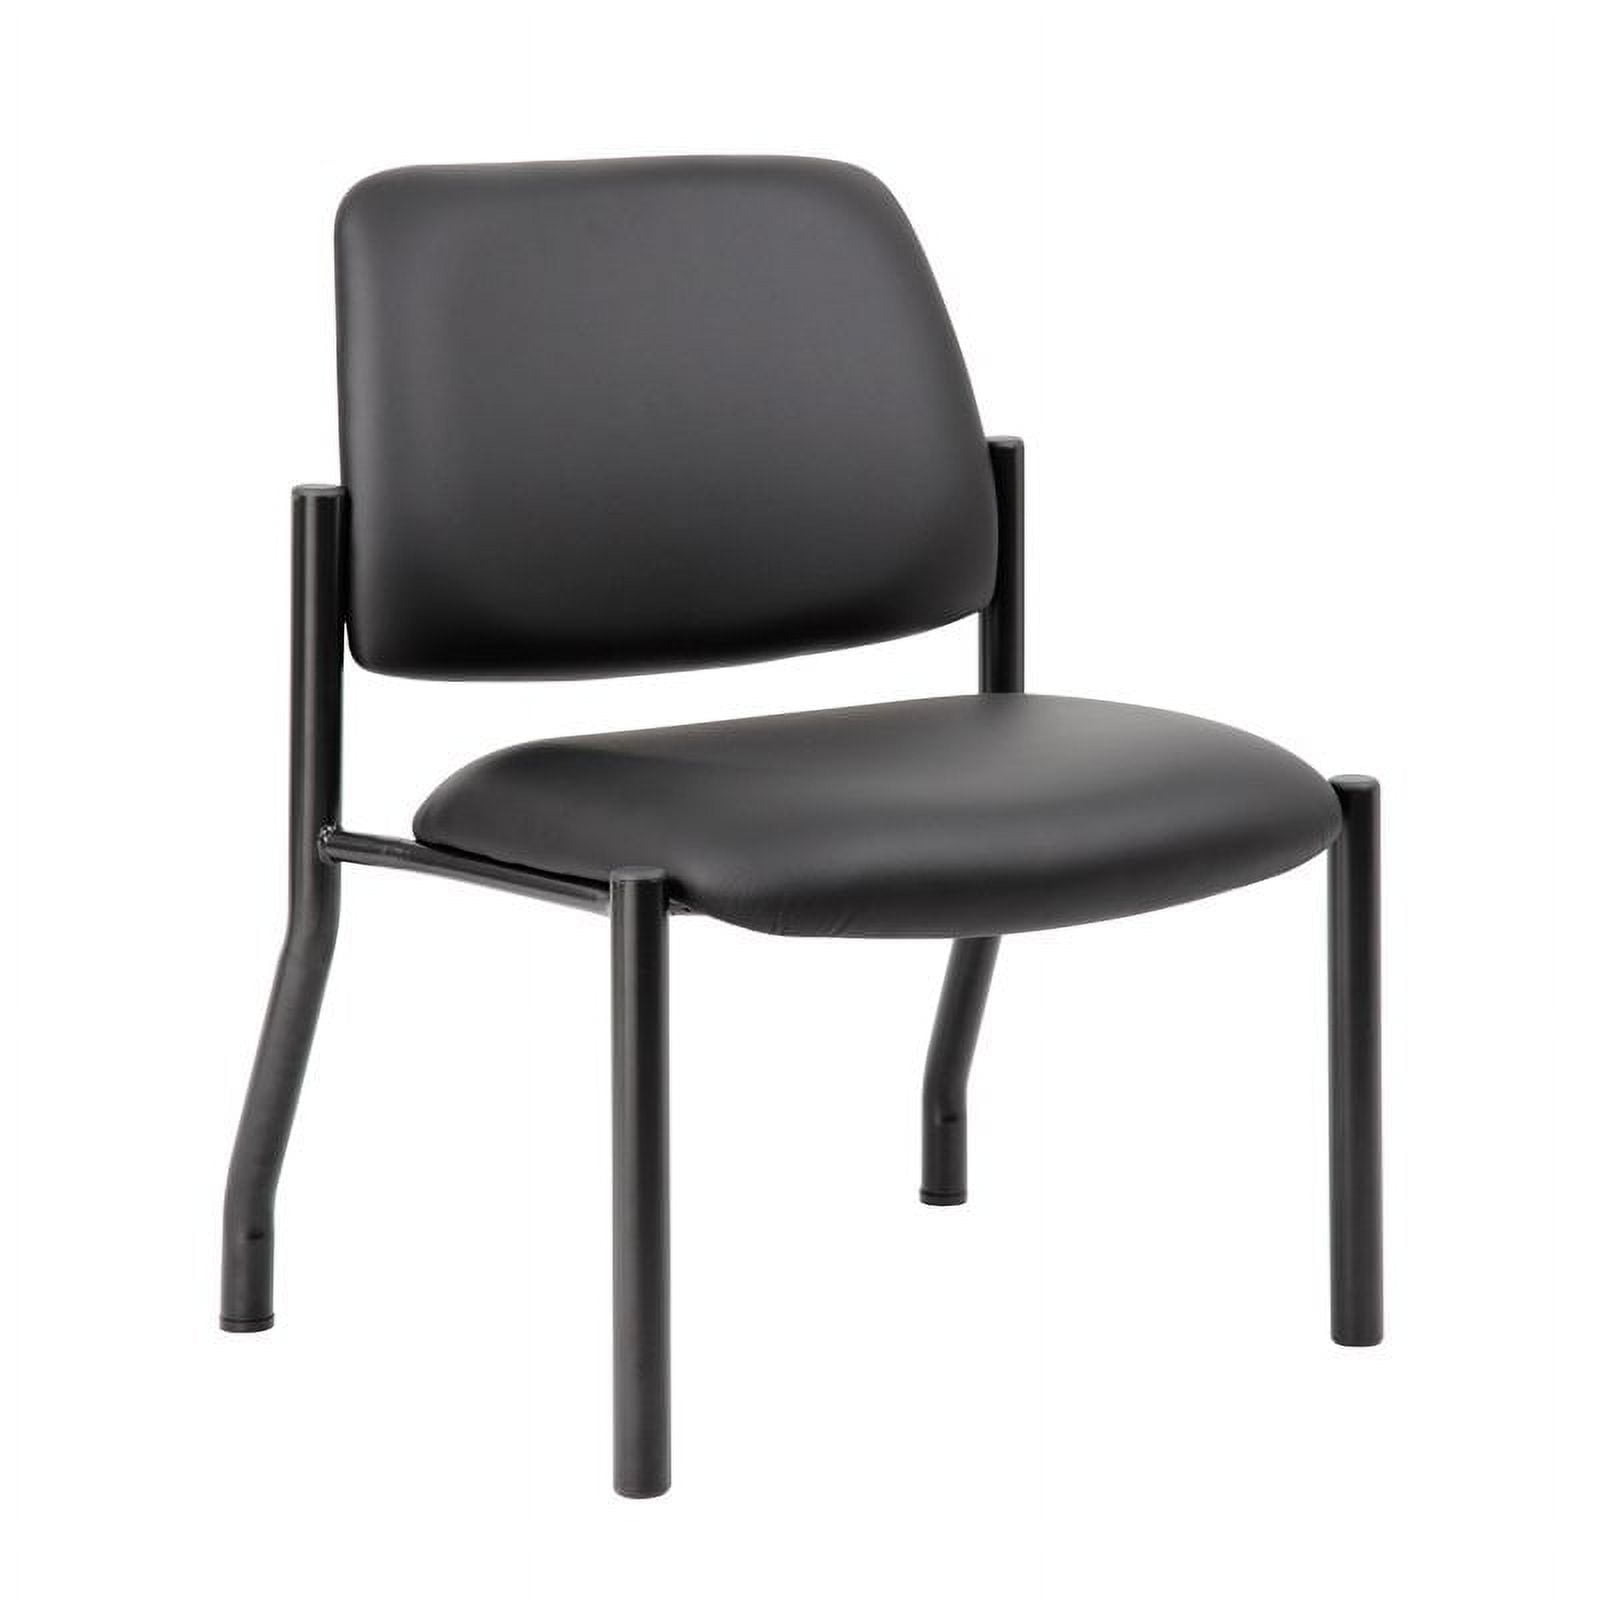 B9595am-bk-400 Antimicrobial Armless Guest Chair, Black - 400 Lbs